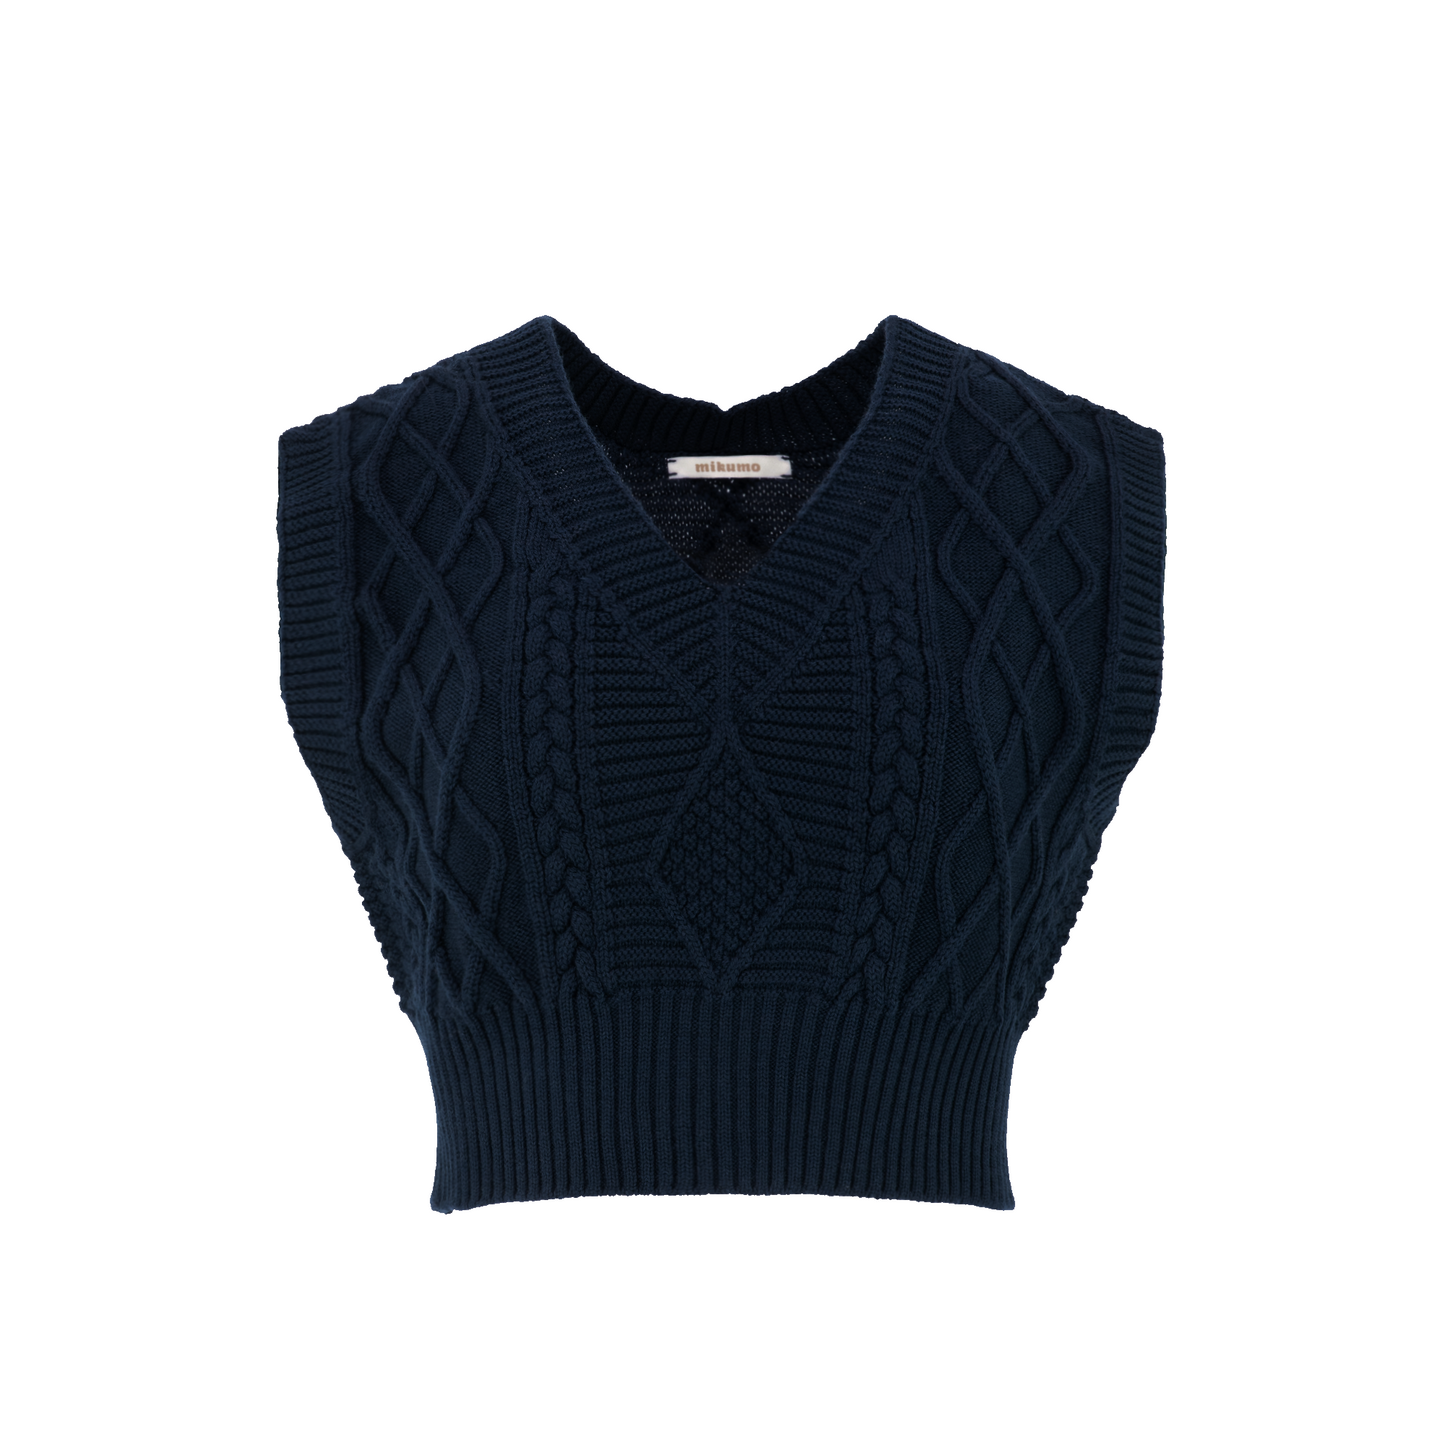 Nora Merino Wool Cropped Sweater Vest - Marine